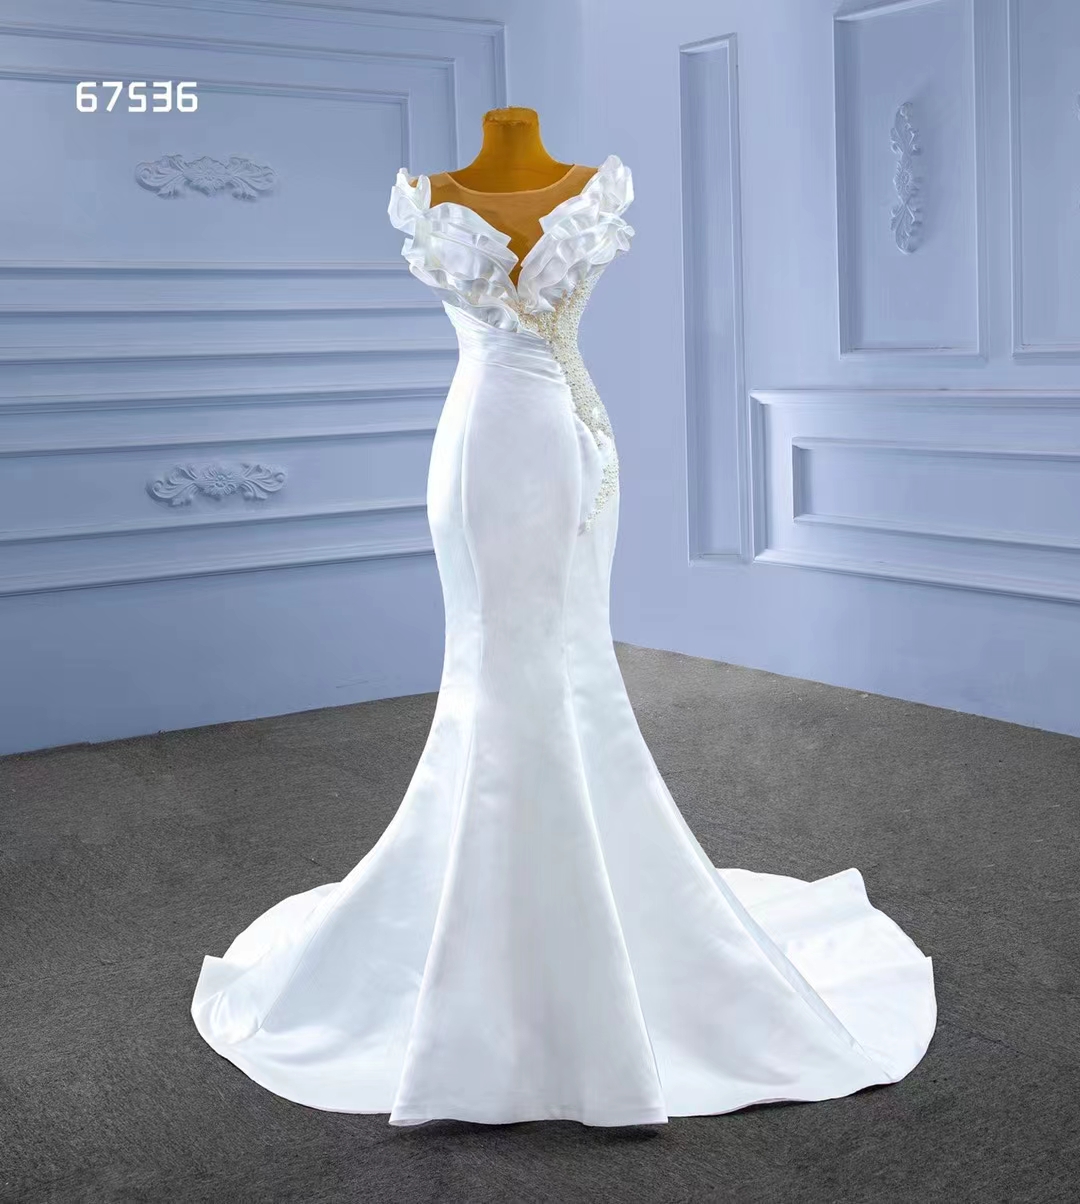 Sjöjungfru bröllopsklänning sexig mjuk satin vit trend design partiell pärlor SM67536